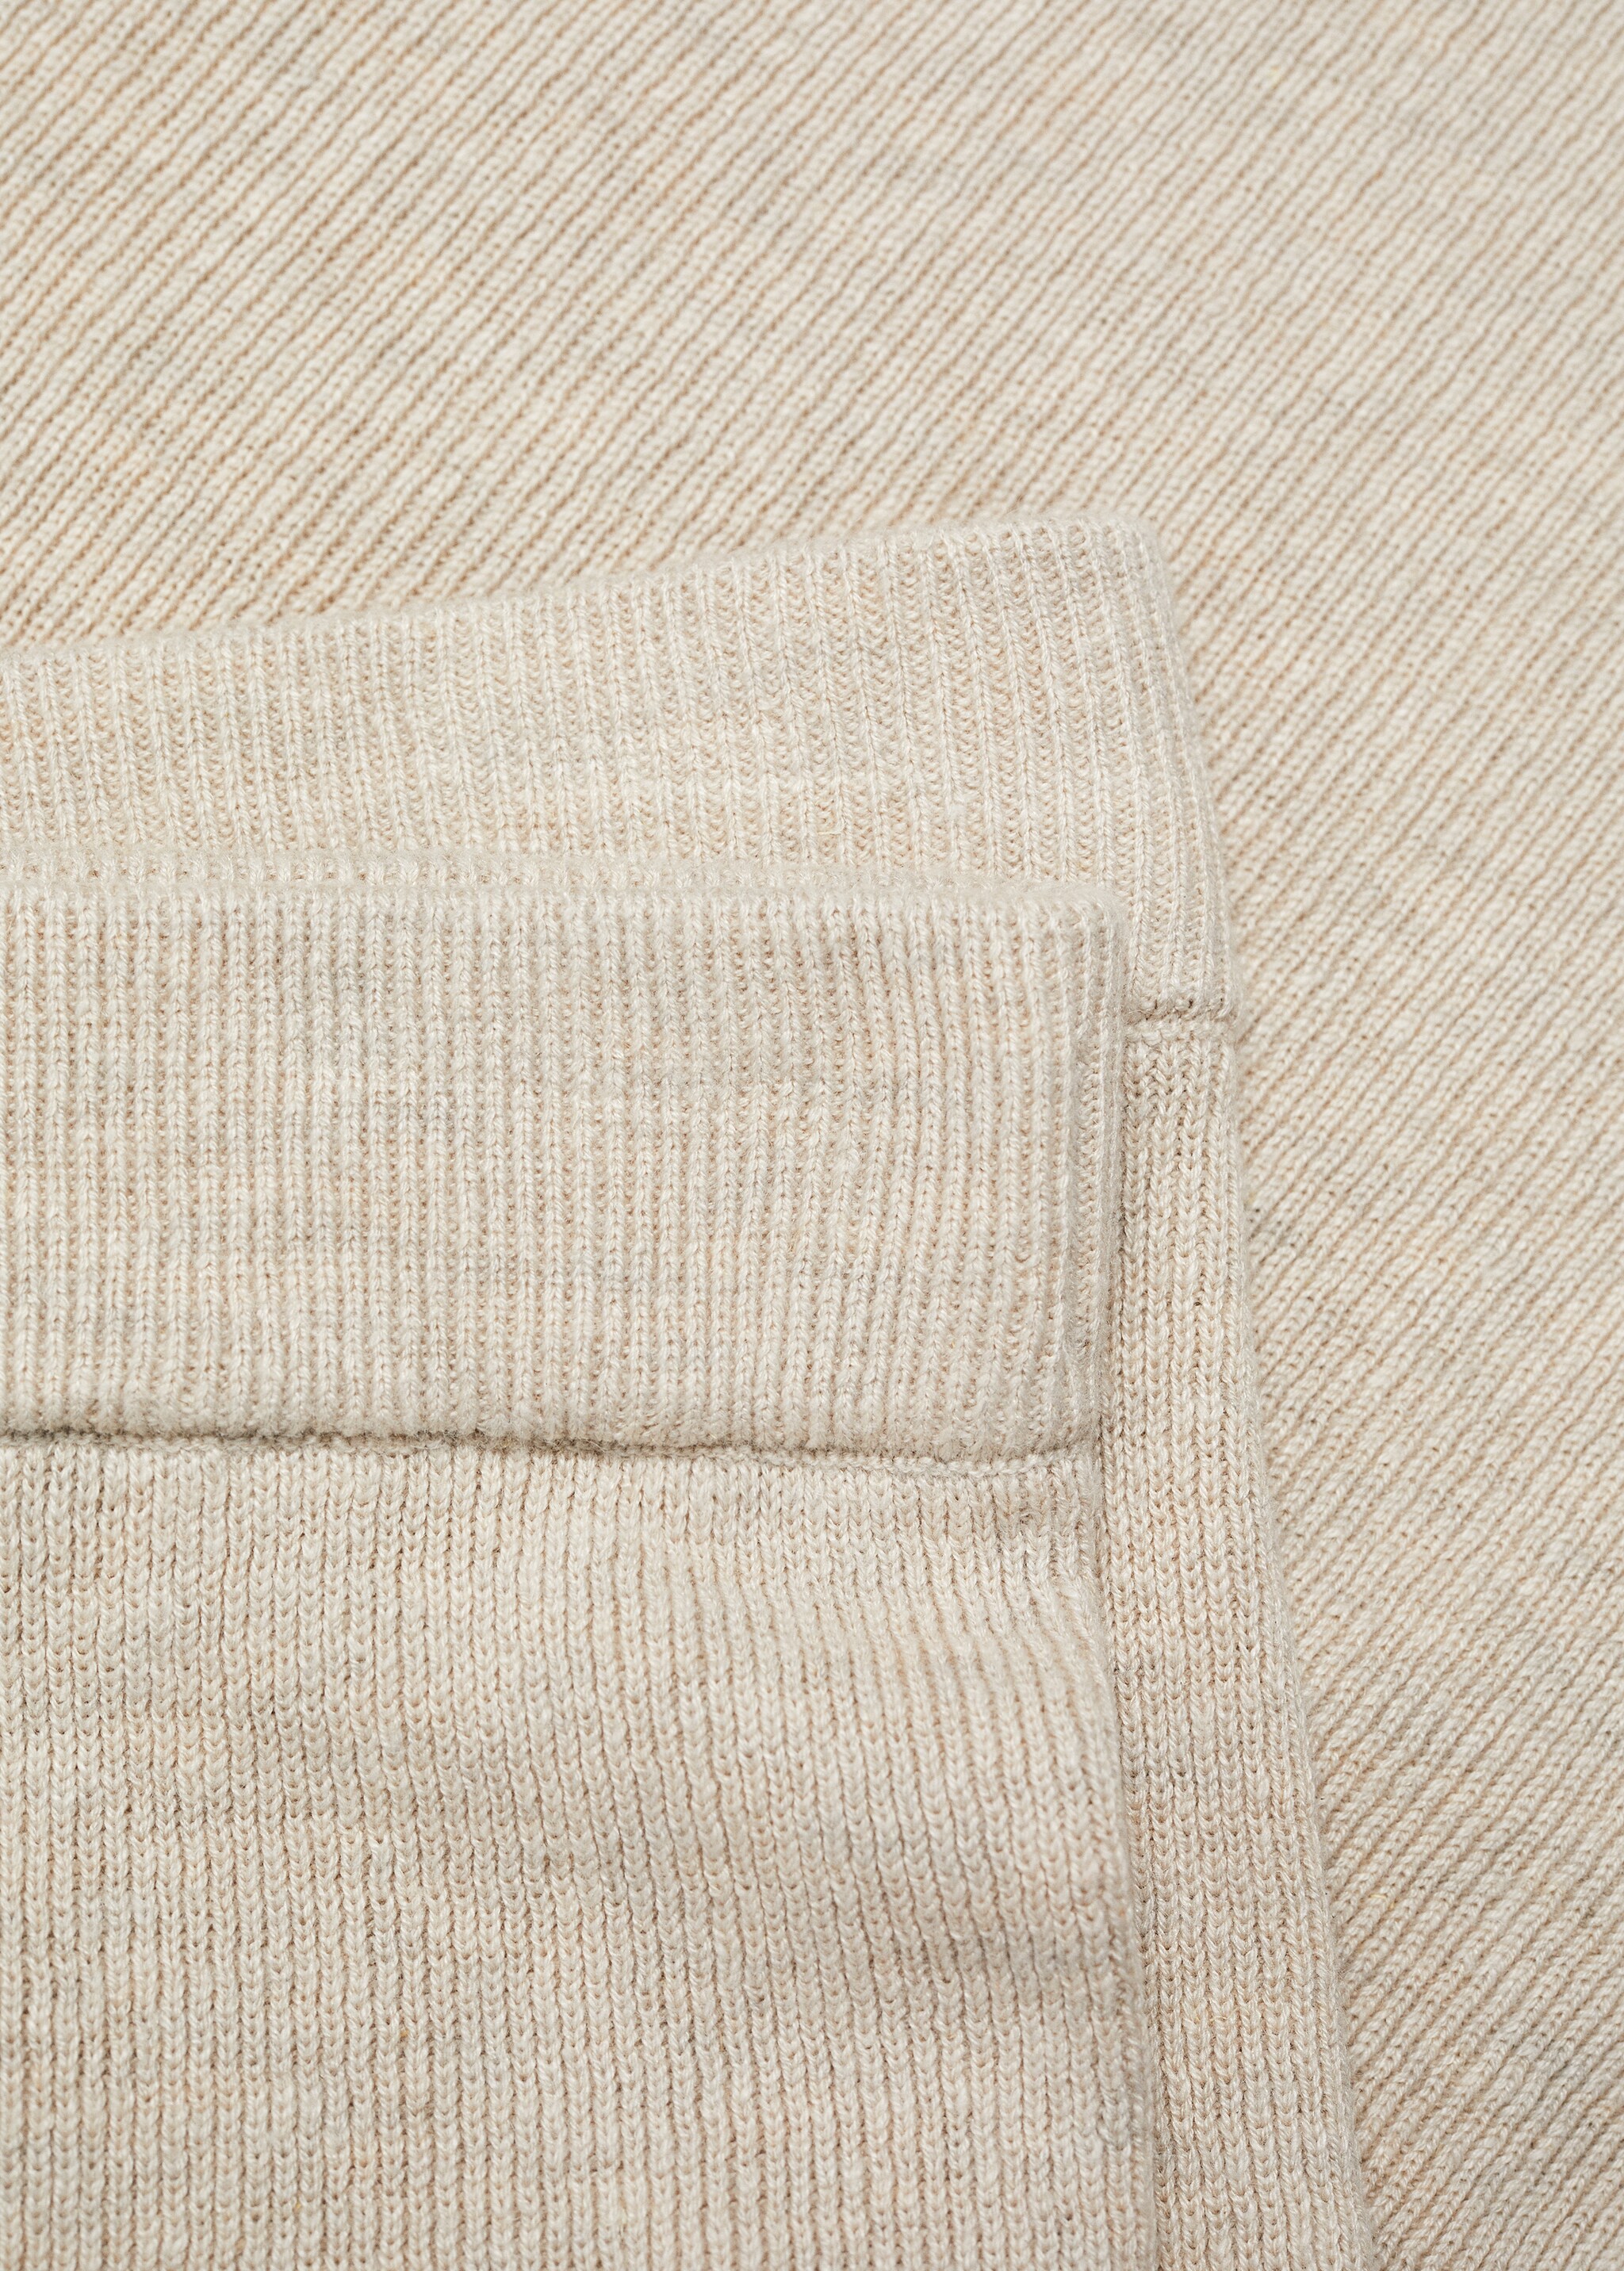 Пижамные шорты из трикотажа хлопок и лен - Деталь изделия 8